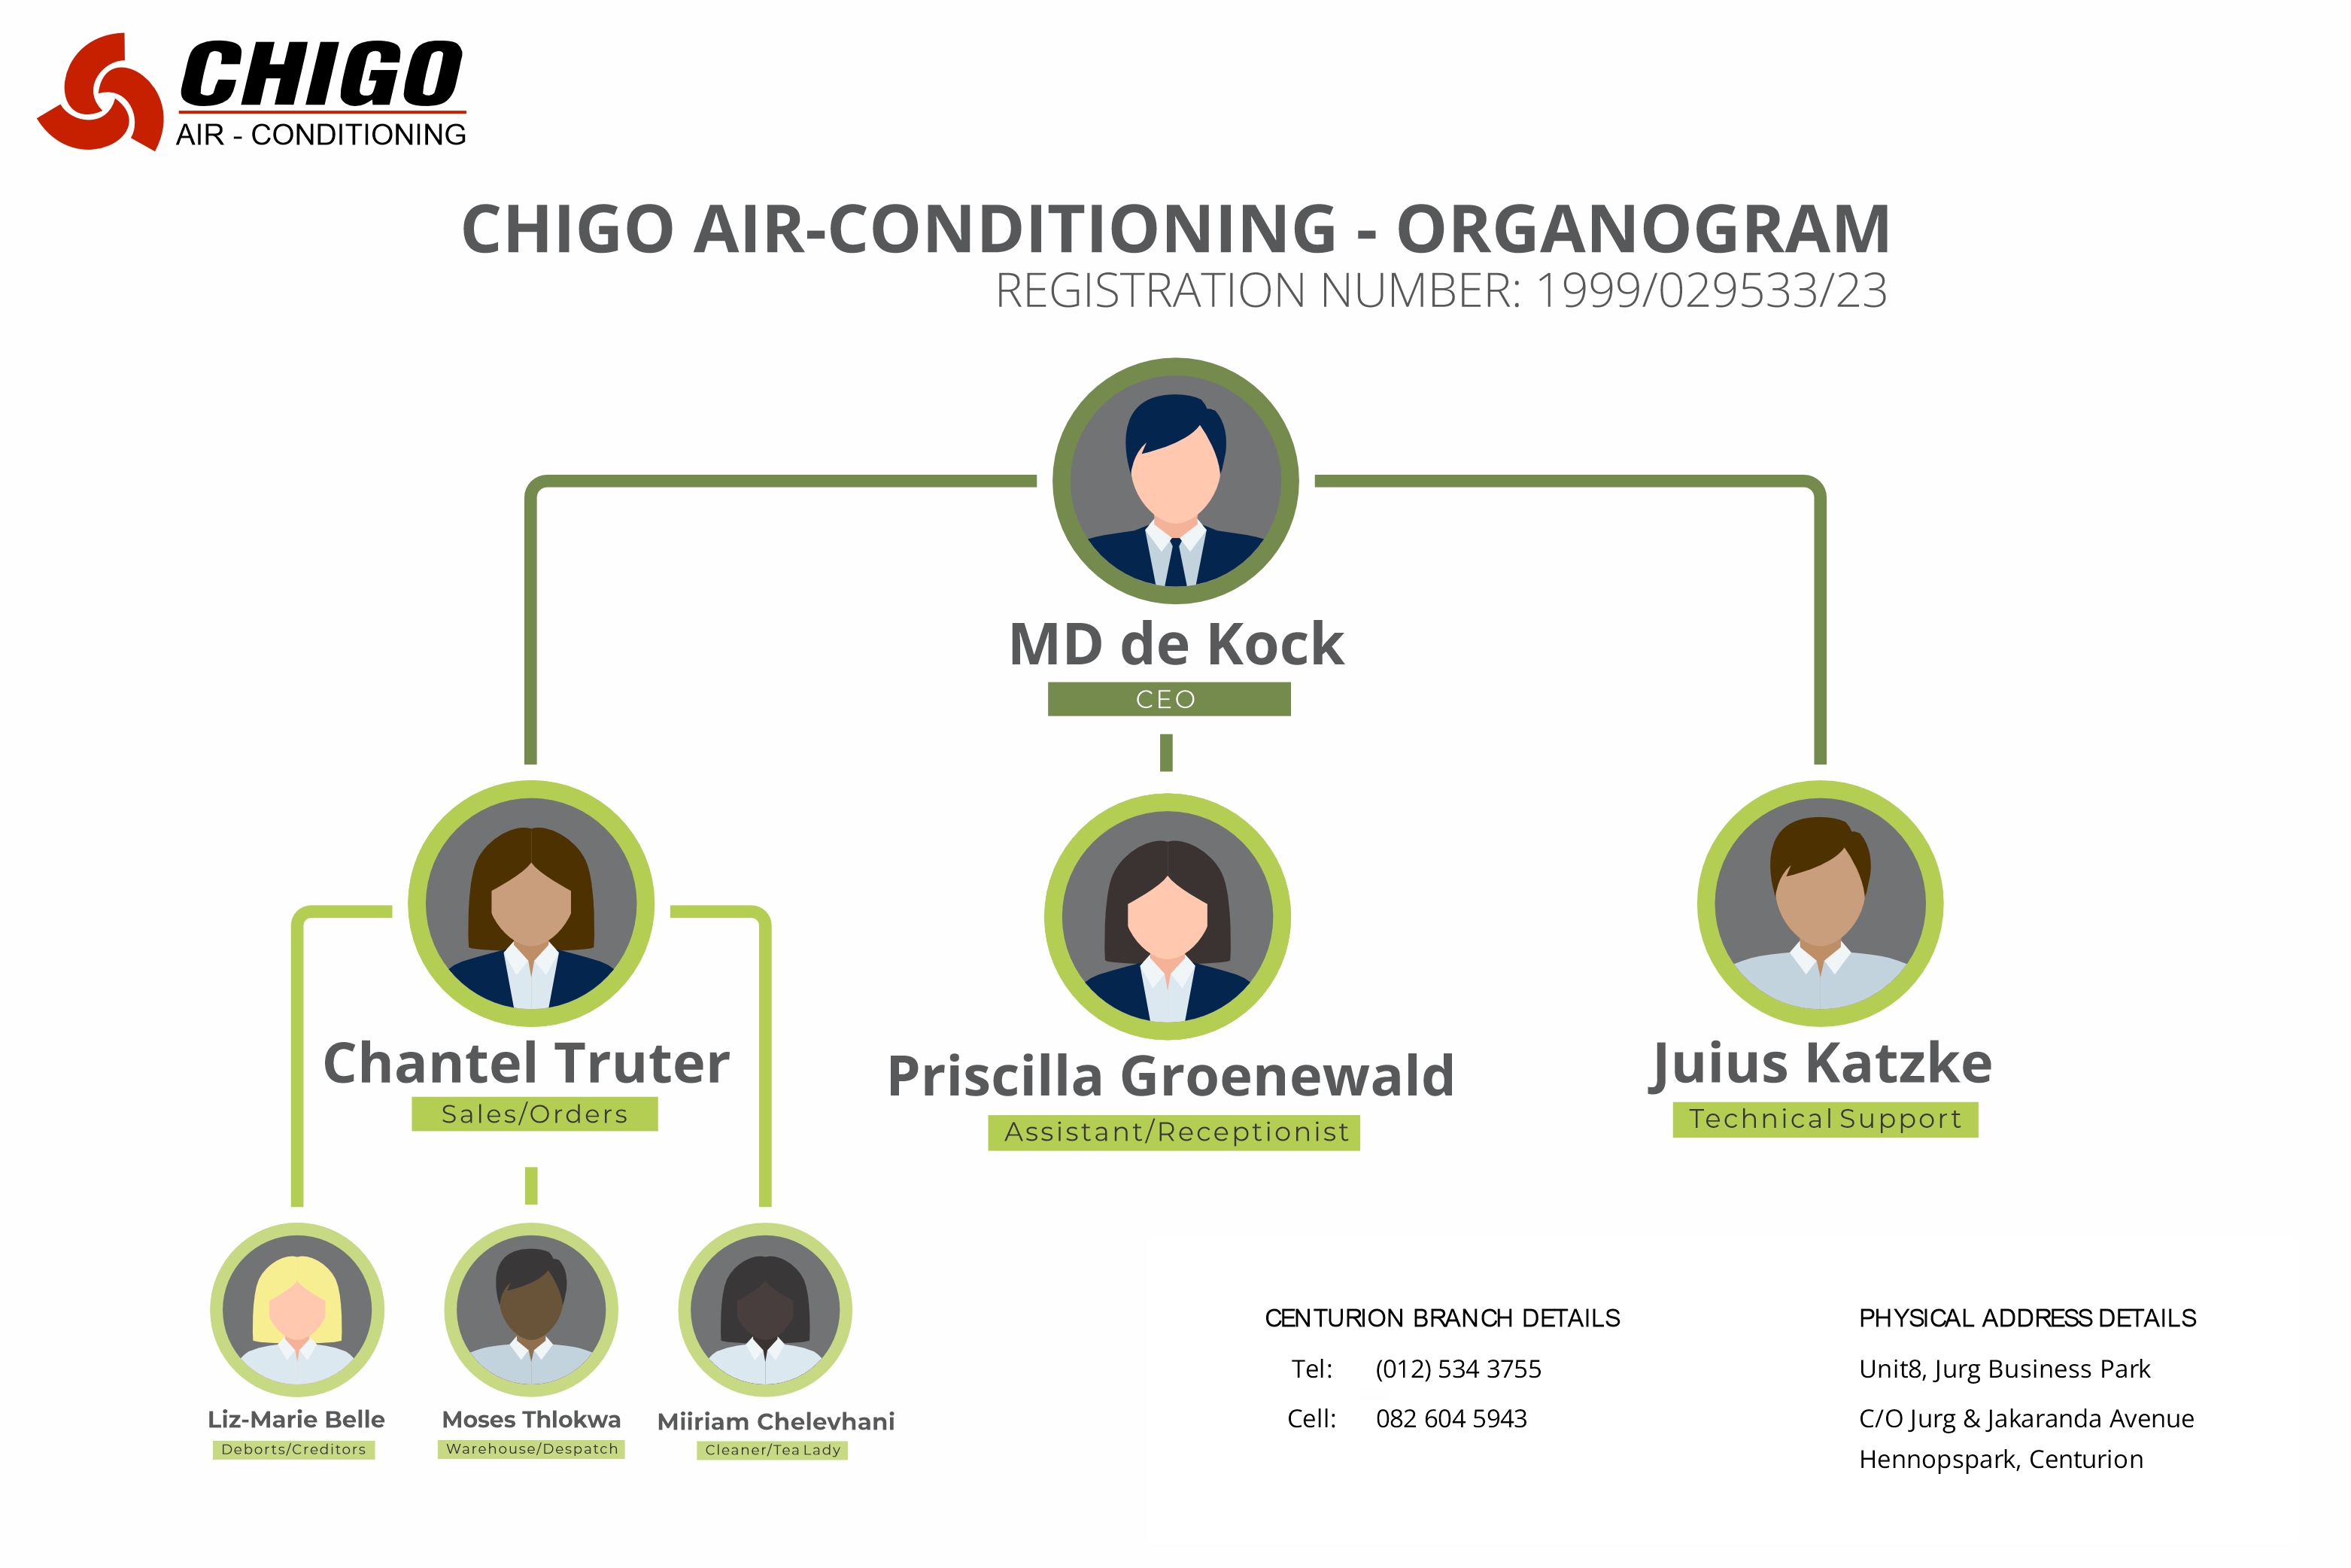 Chigo Air - Conditioning Organogram